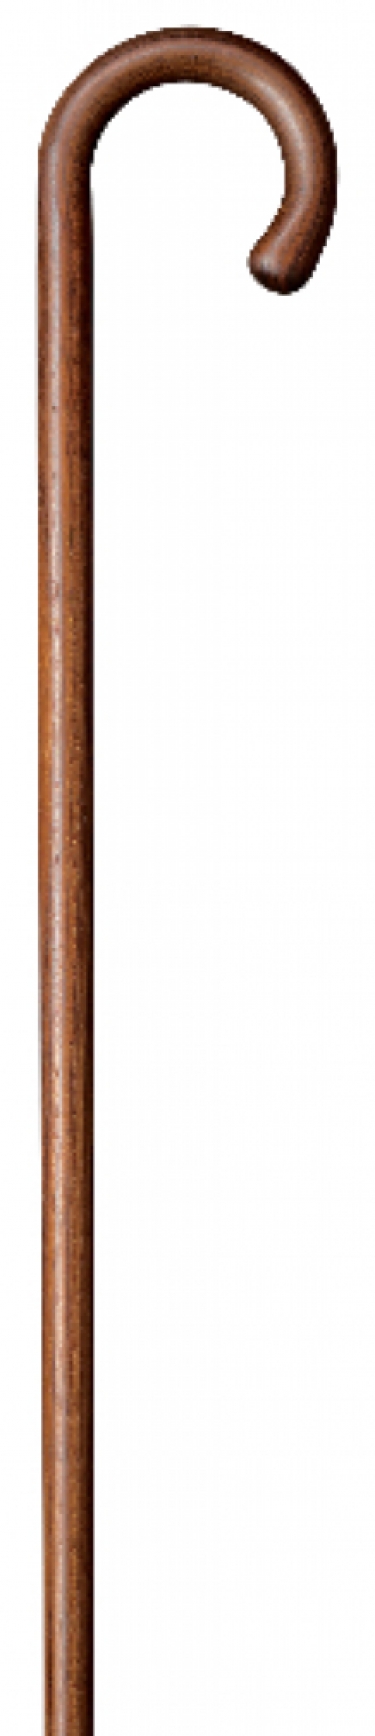 cane round handle walnut wood